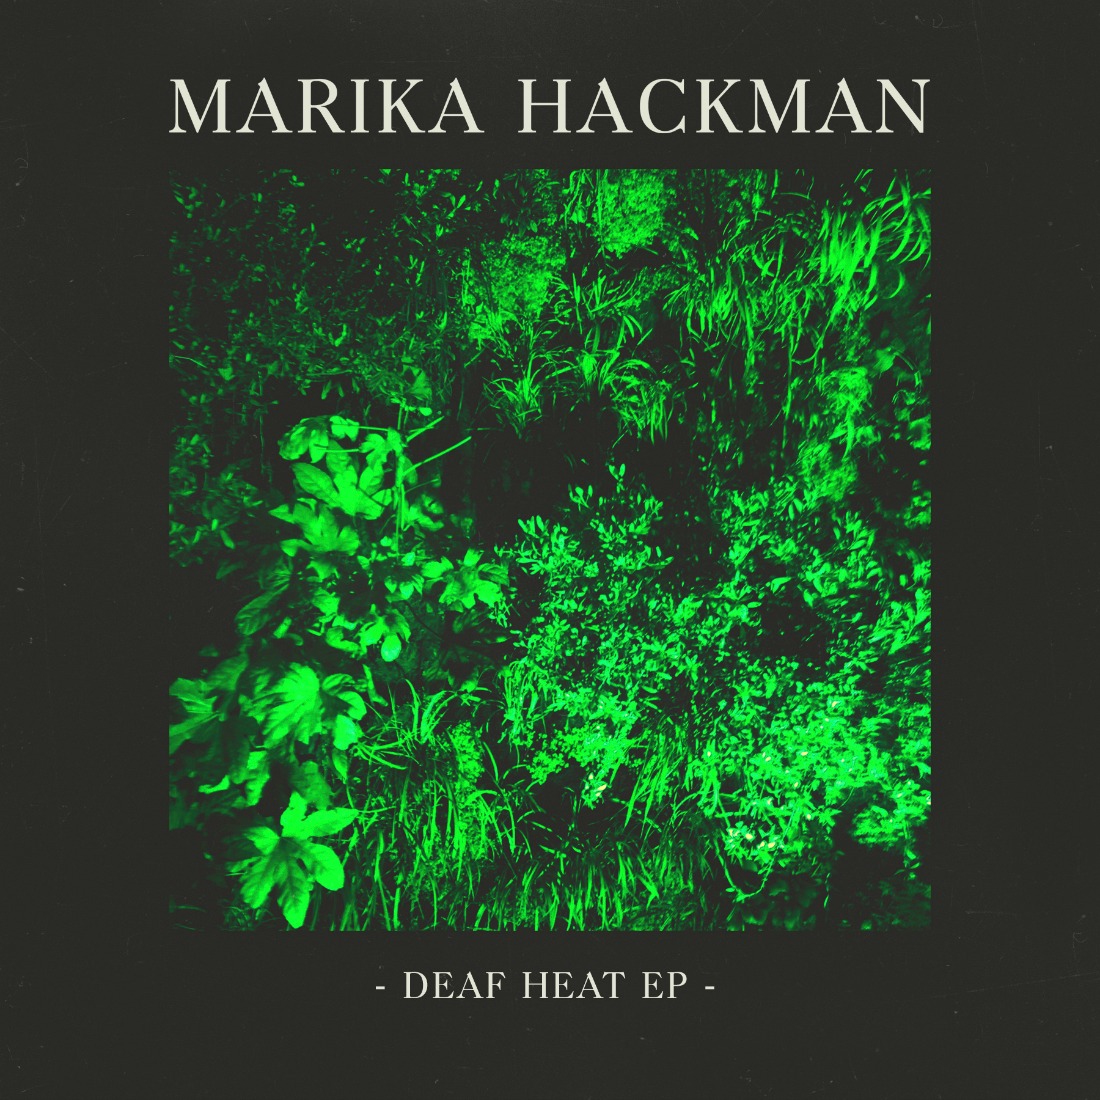 Portada de 'Deaf Heat' de Marika Hackman.